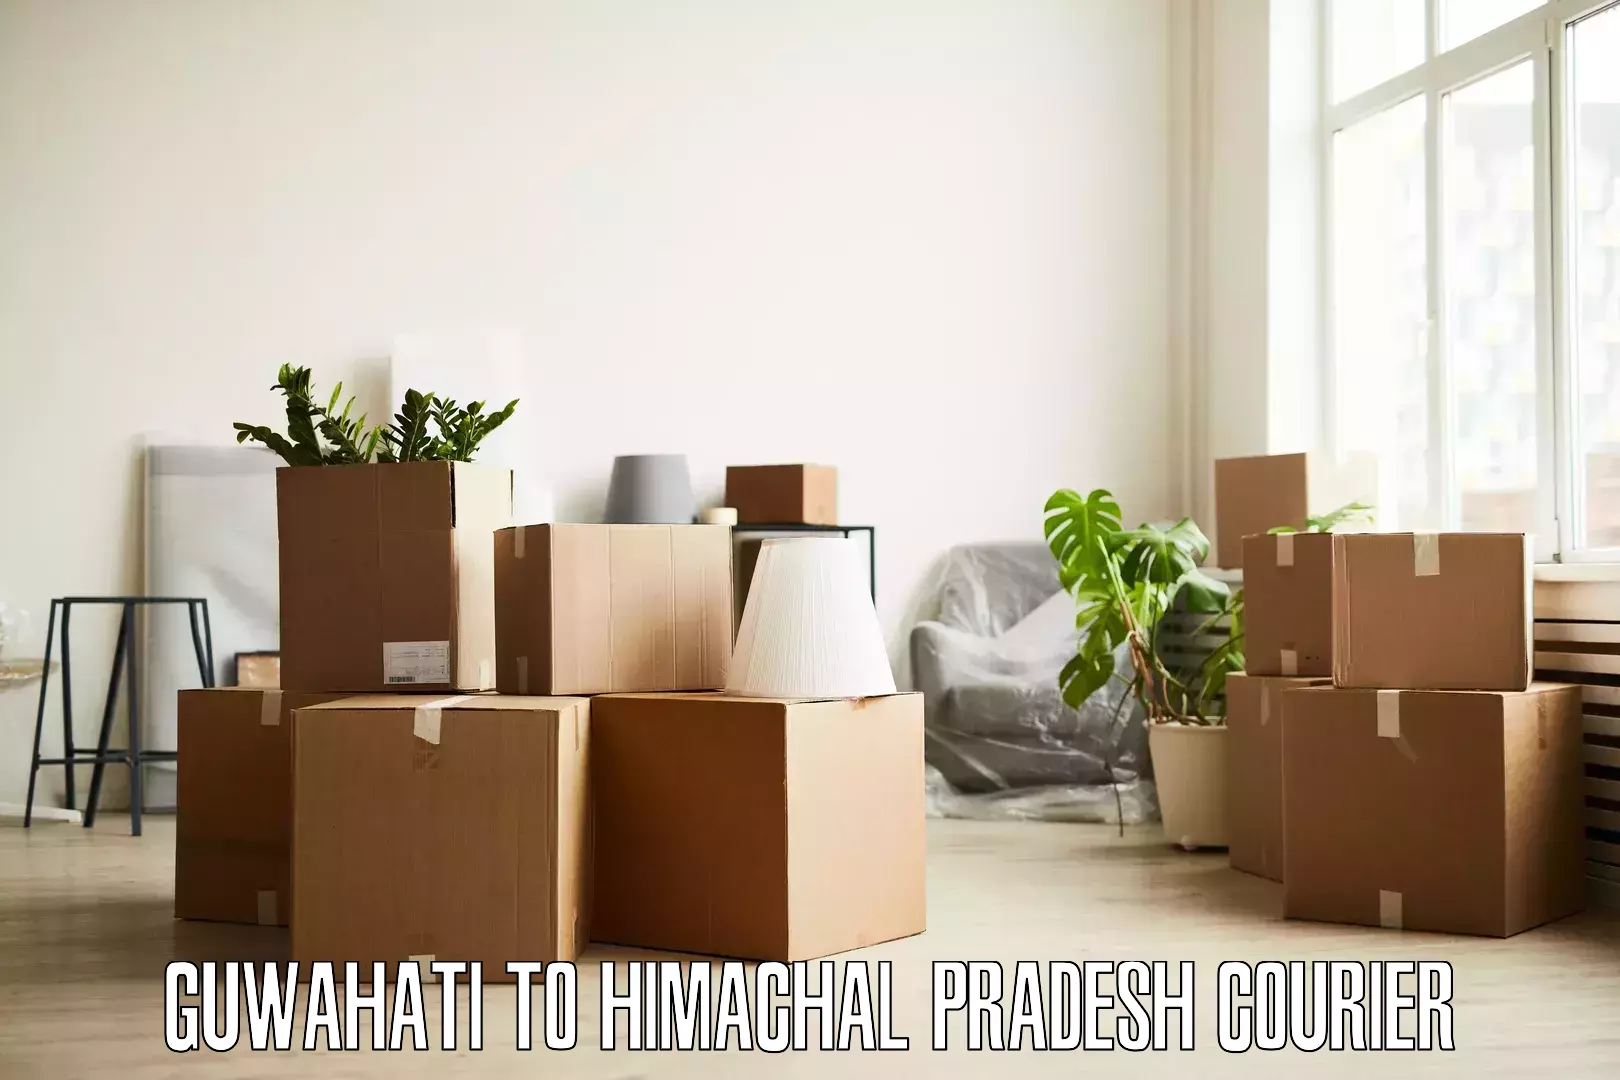 Professional home movers Guwahati to Una Himachal Pradesh